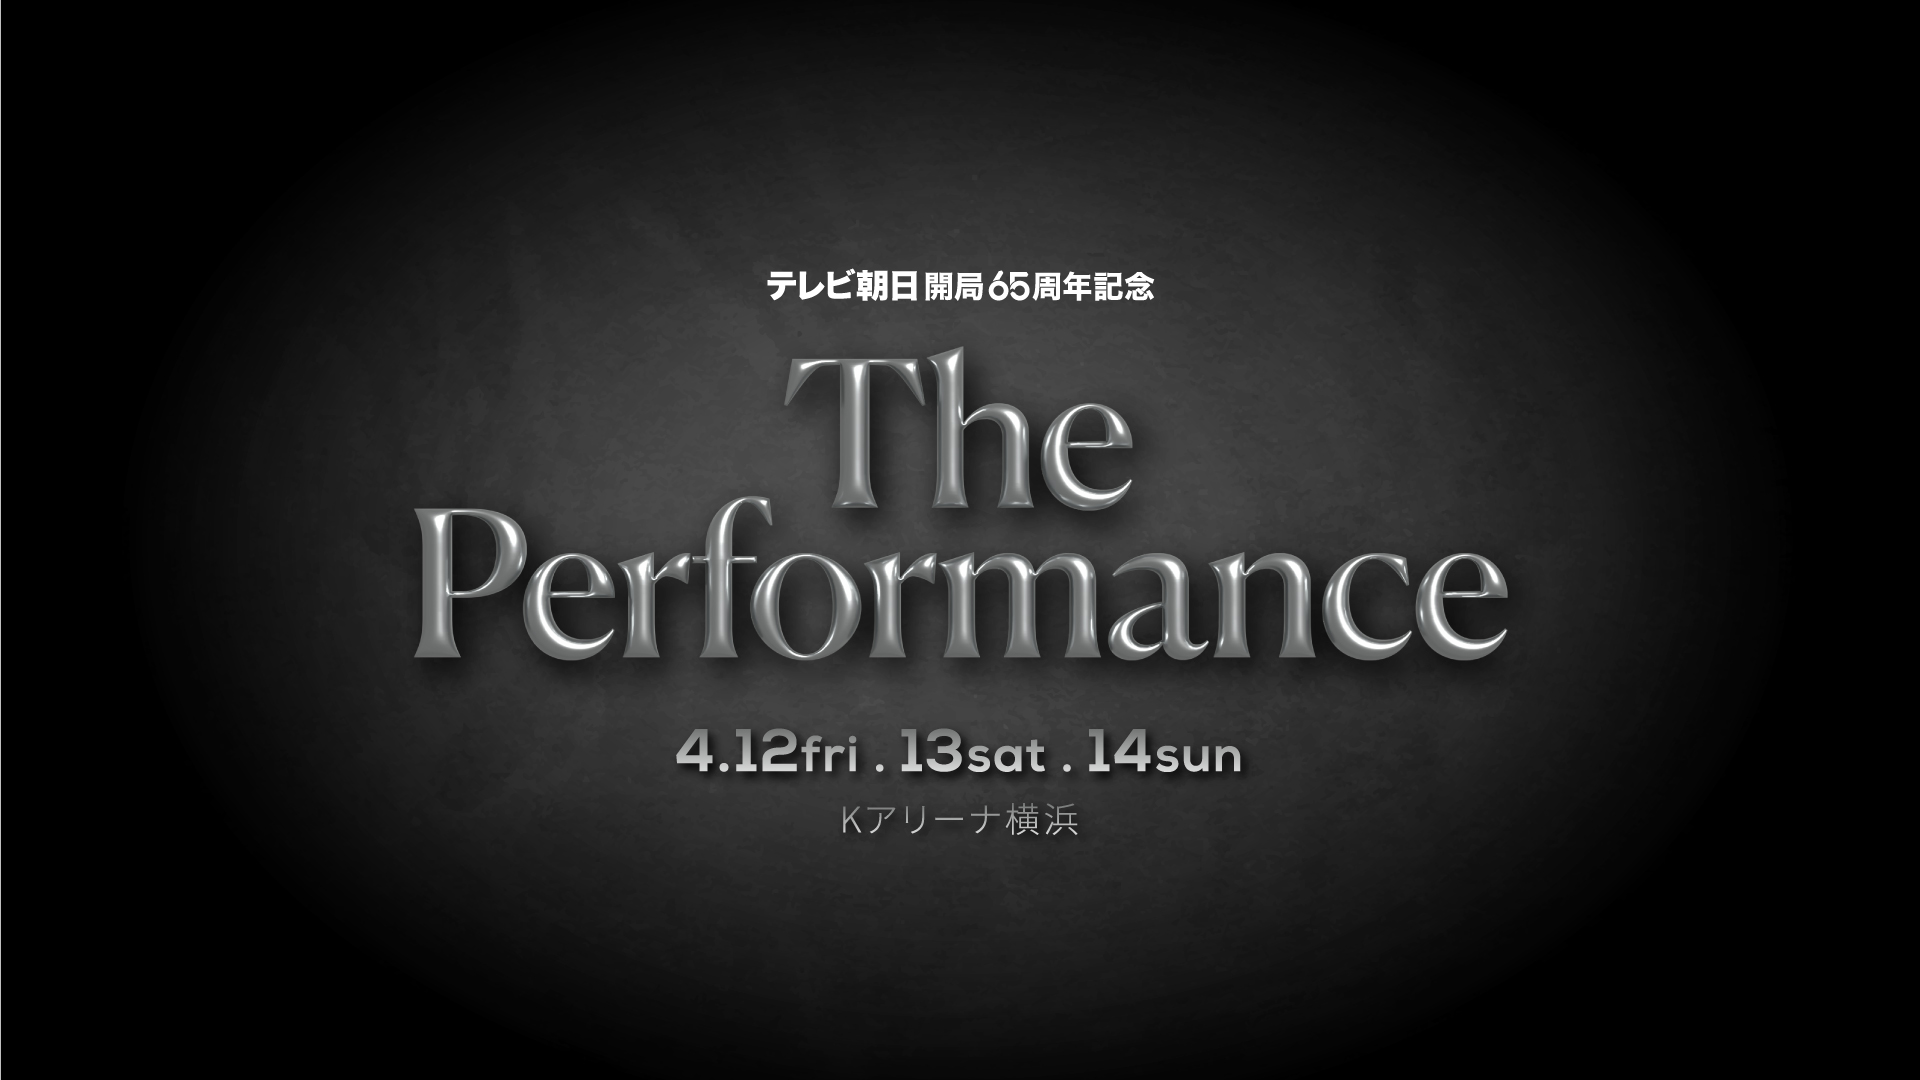 テレビ朝日開局65周年記念「The Performance」 - blur